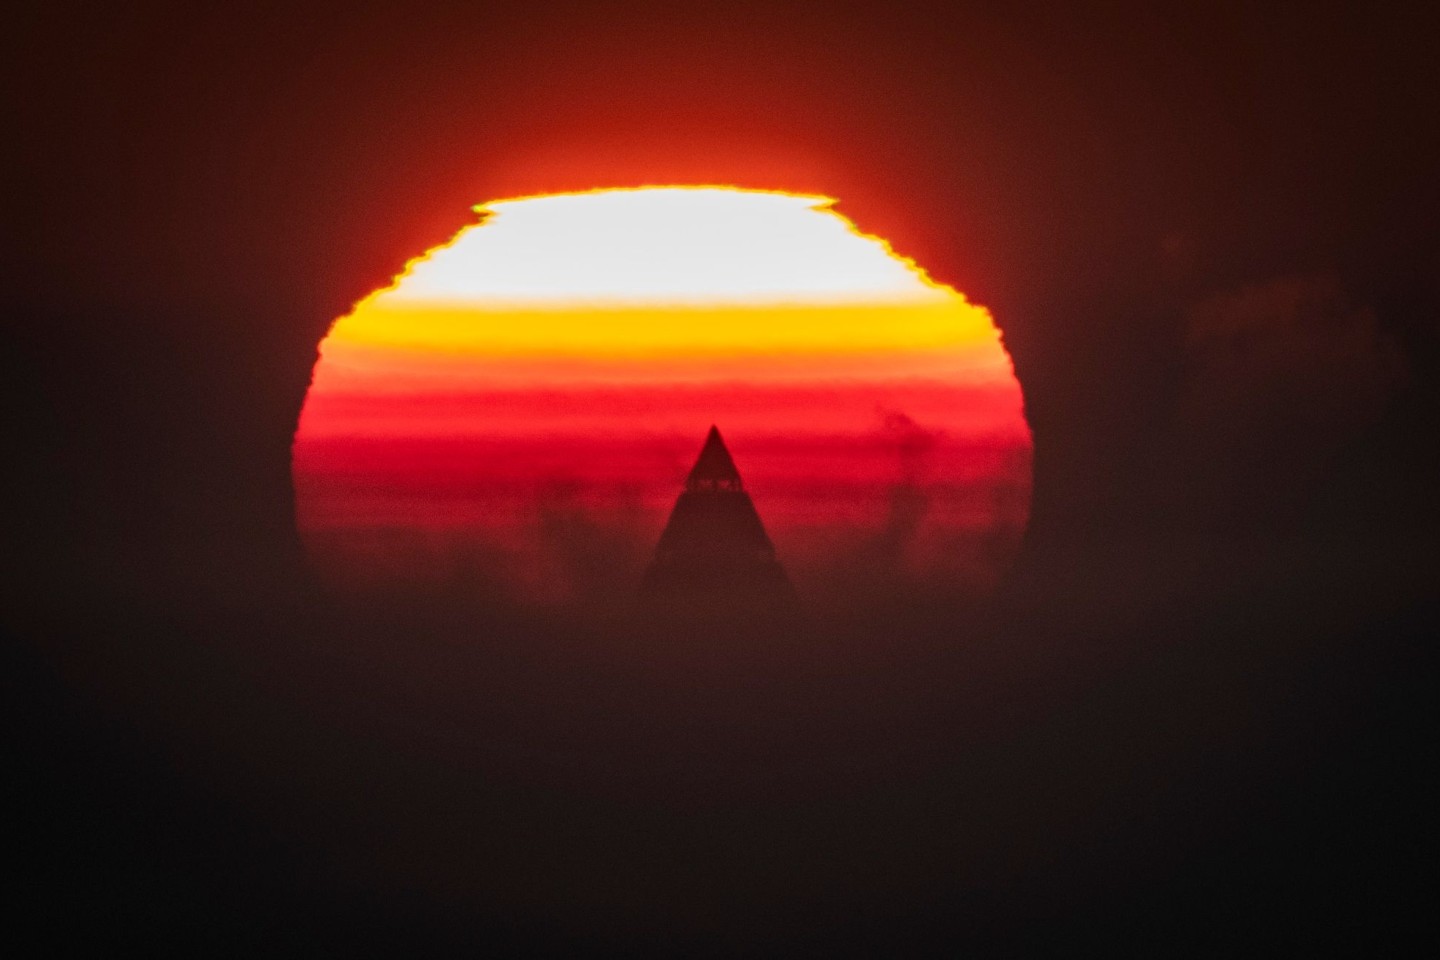 Die Spitze des Messeturms ragt als einziges Gebäude der Skyline von Frankfurt vor der aufgehenden Sonne heraus.